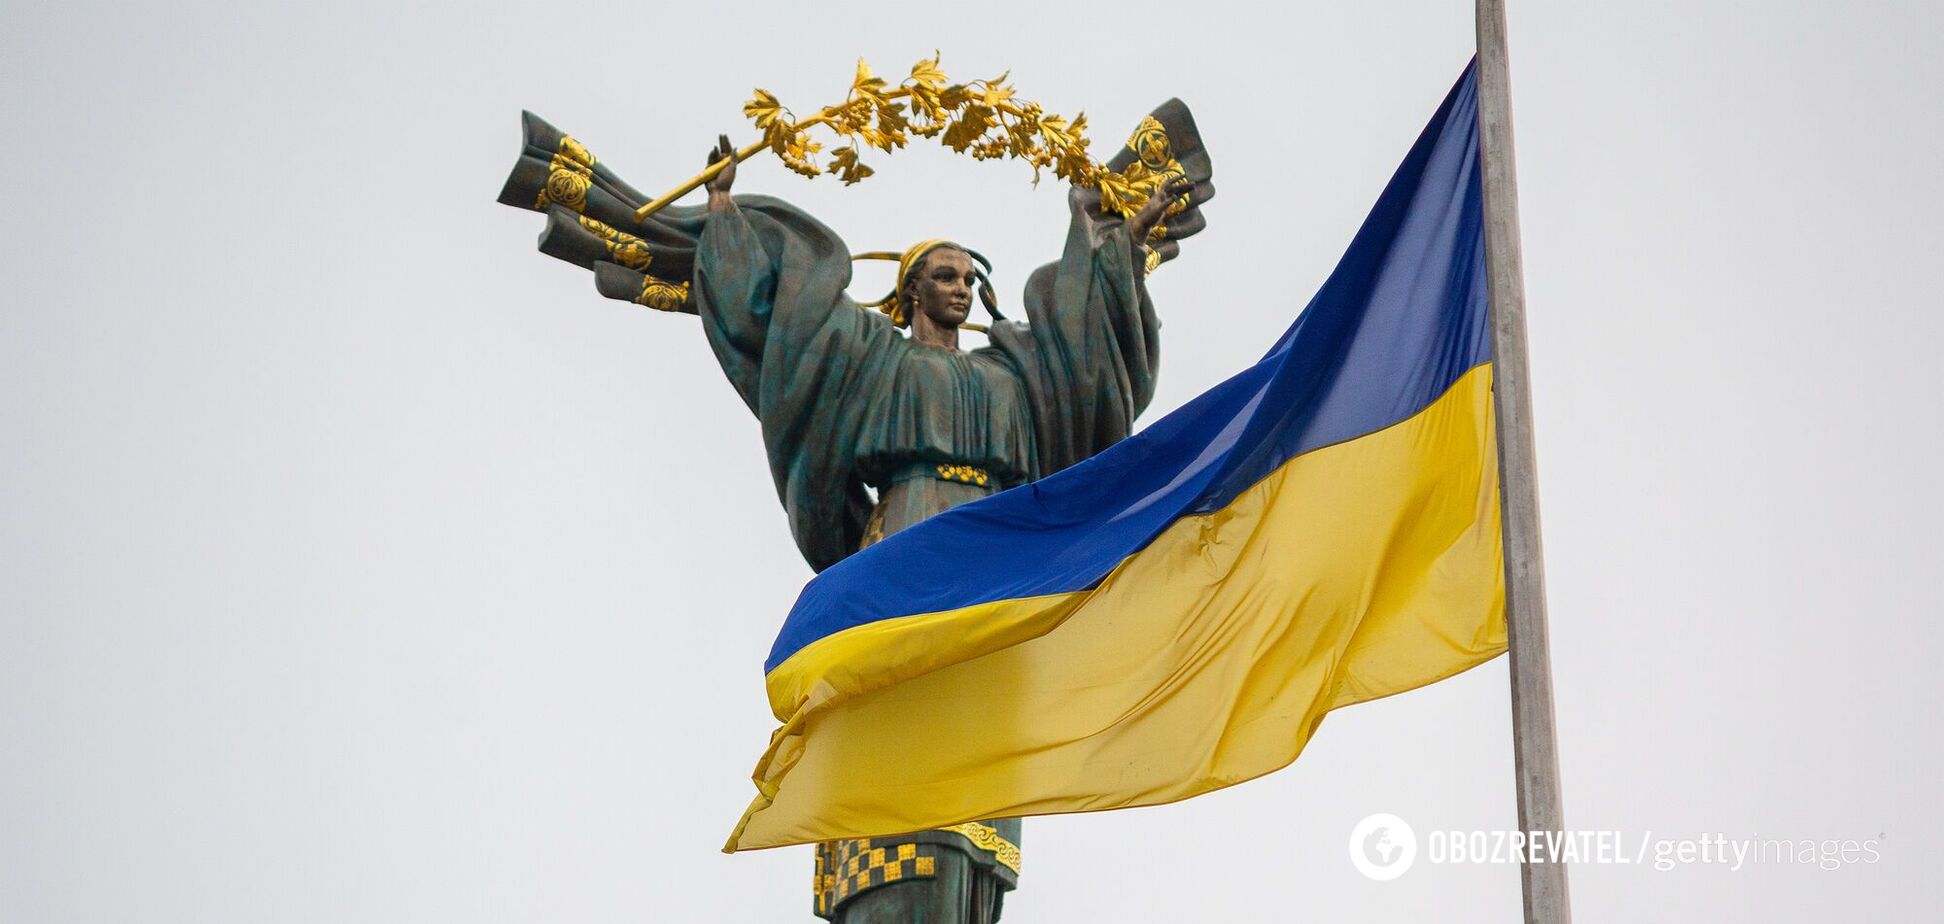 Власть имущие, которые смеялись над нашей Независимостью, Великой Украины никогда не построят!